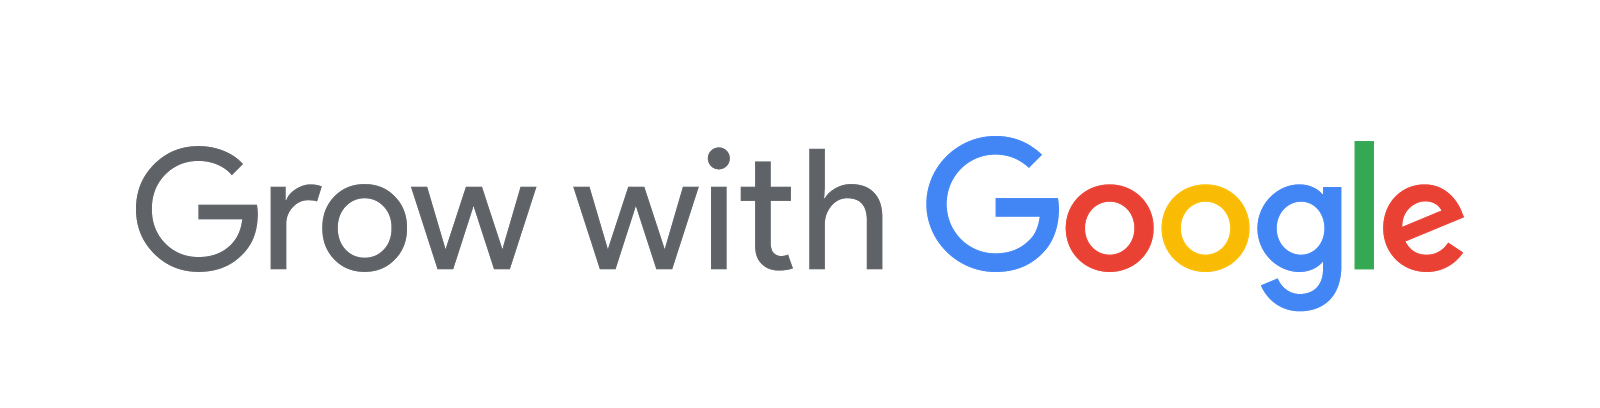 gwg logo